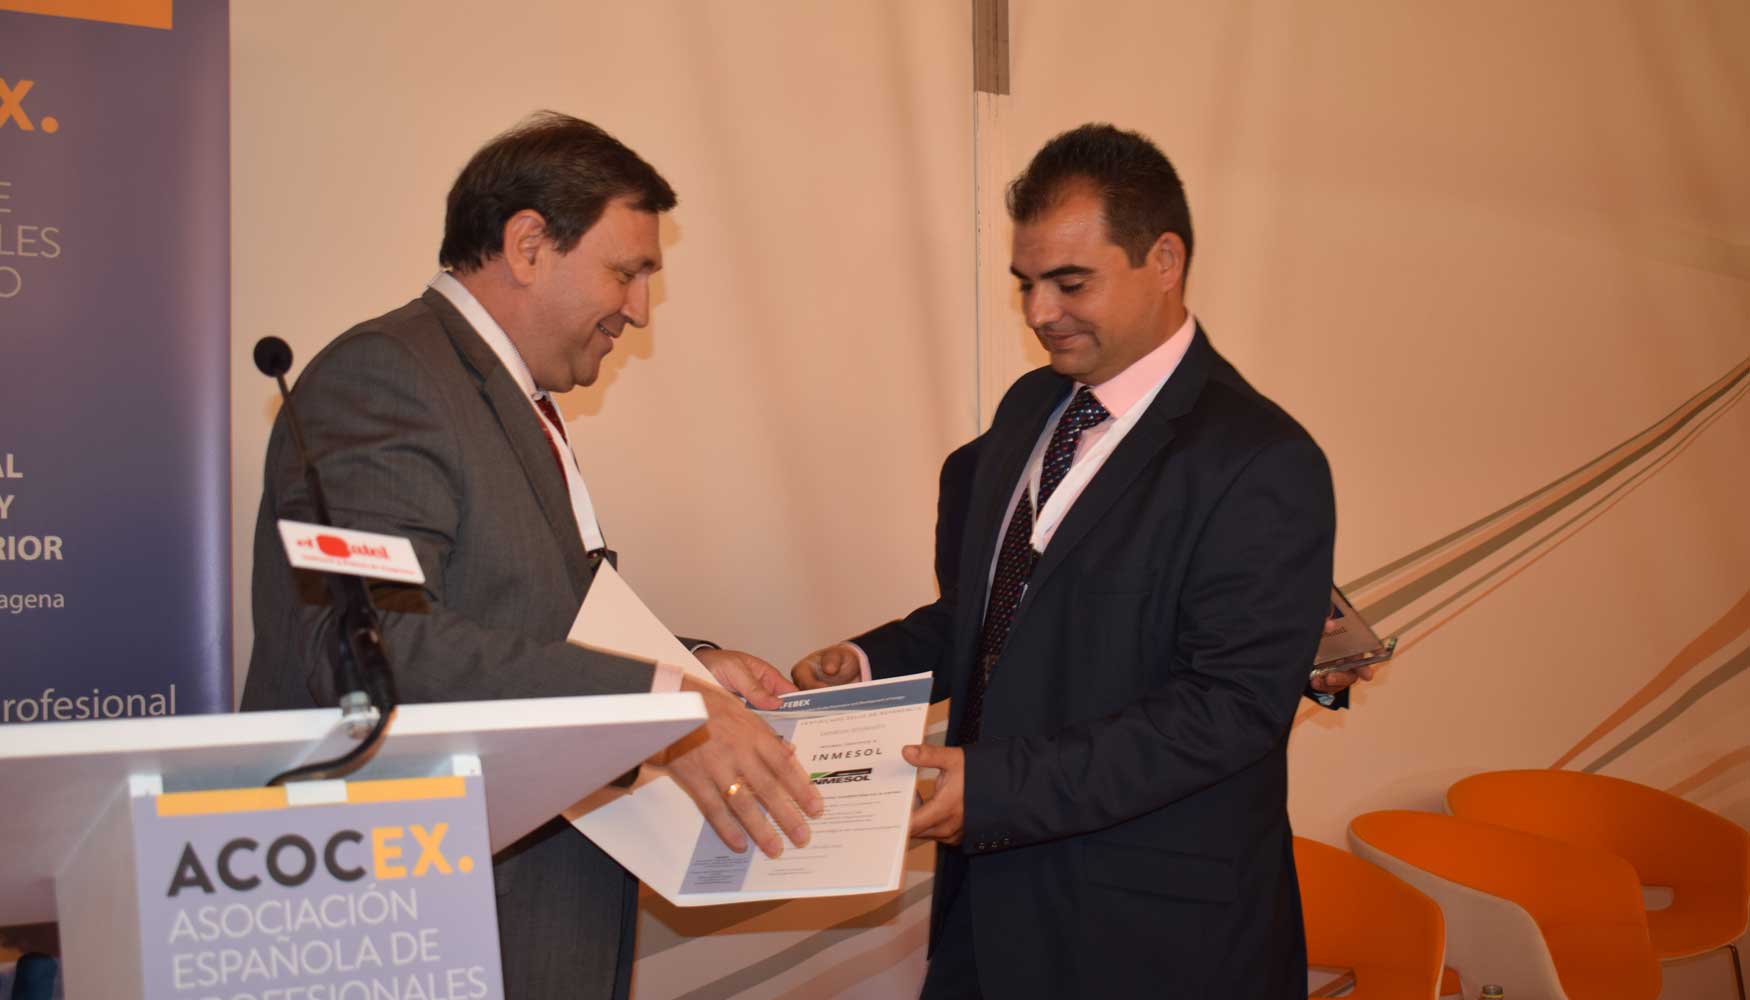 Miguel ngel Martn, presidente de Ifebex, entrega la acreditacin a Ramn Solano, director comercial y de marketing de Inmesol...